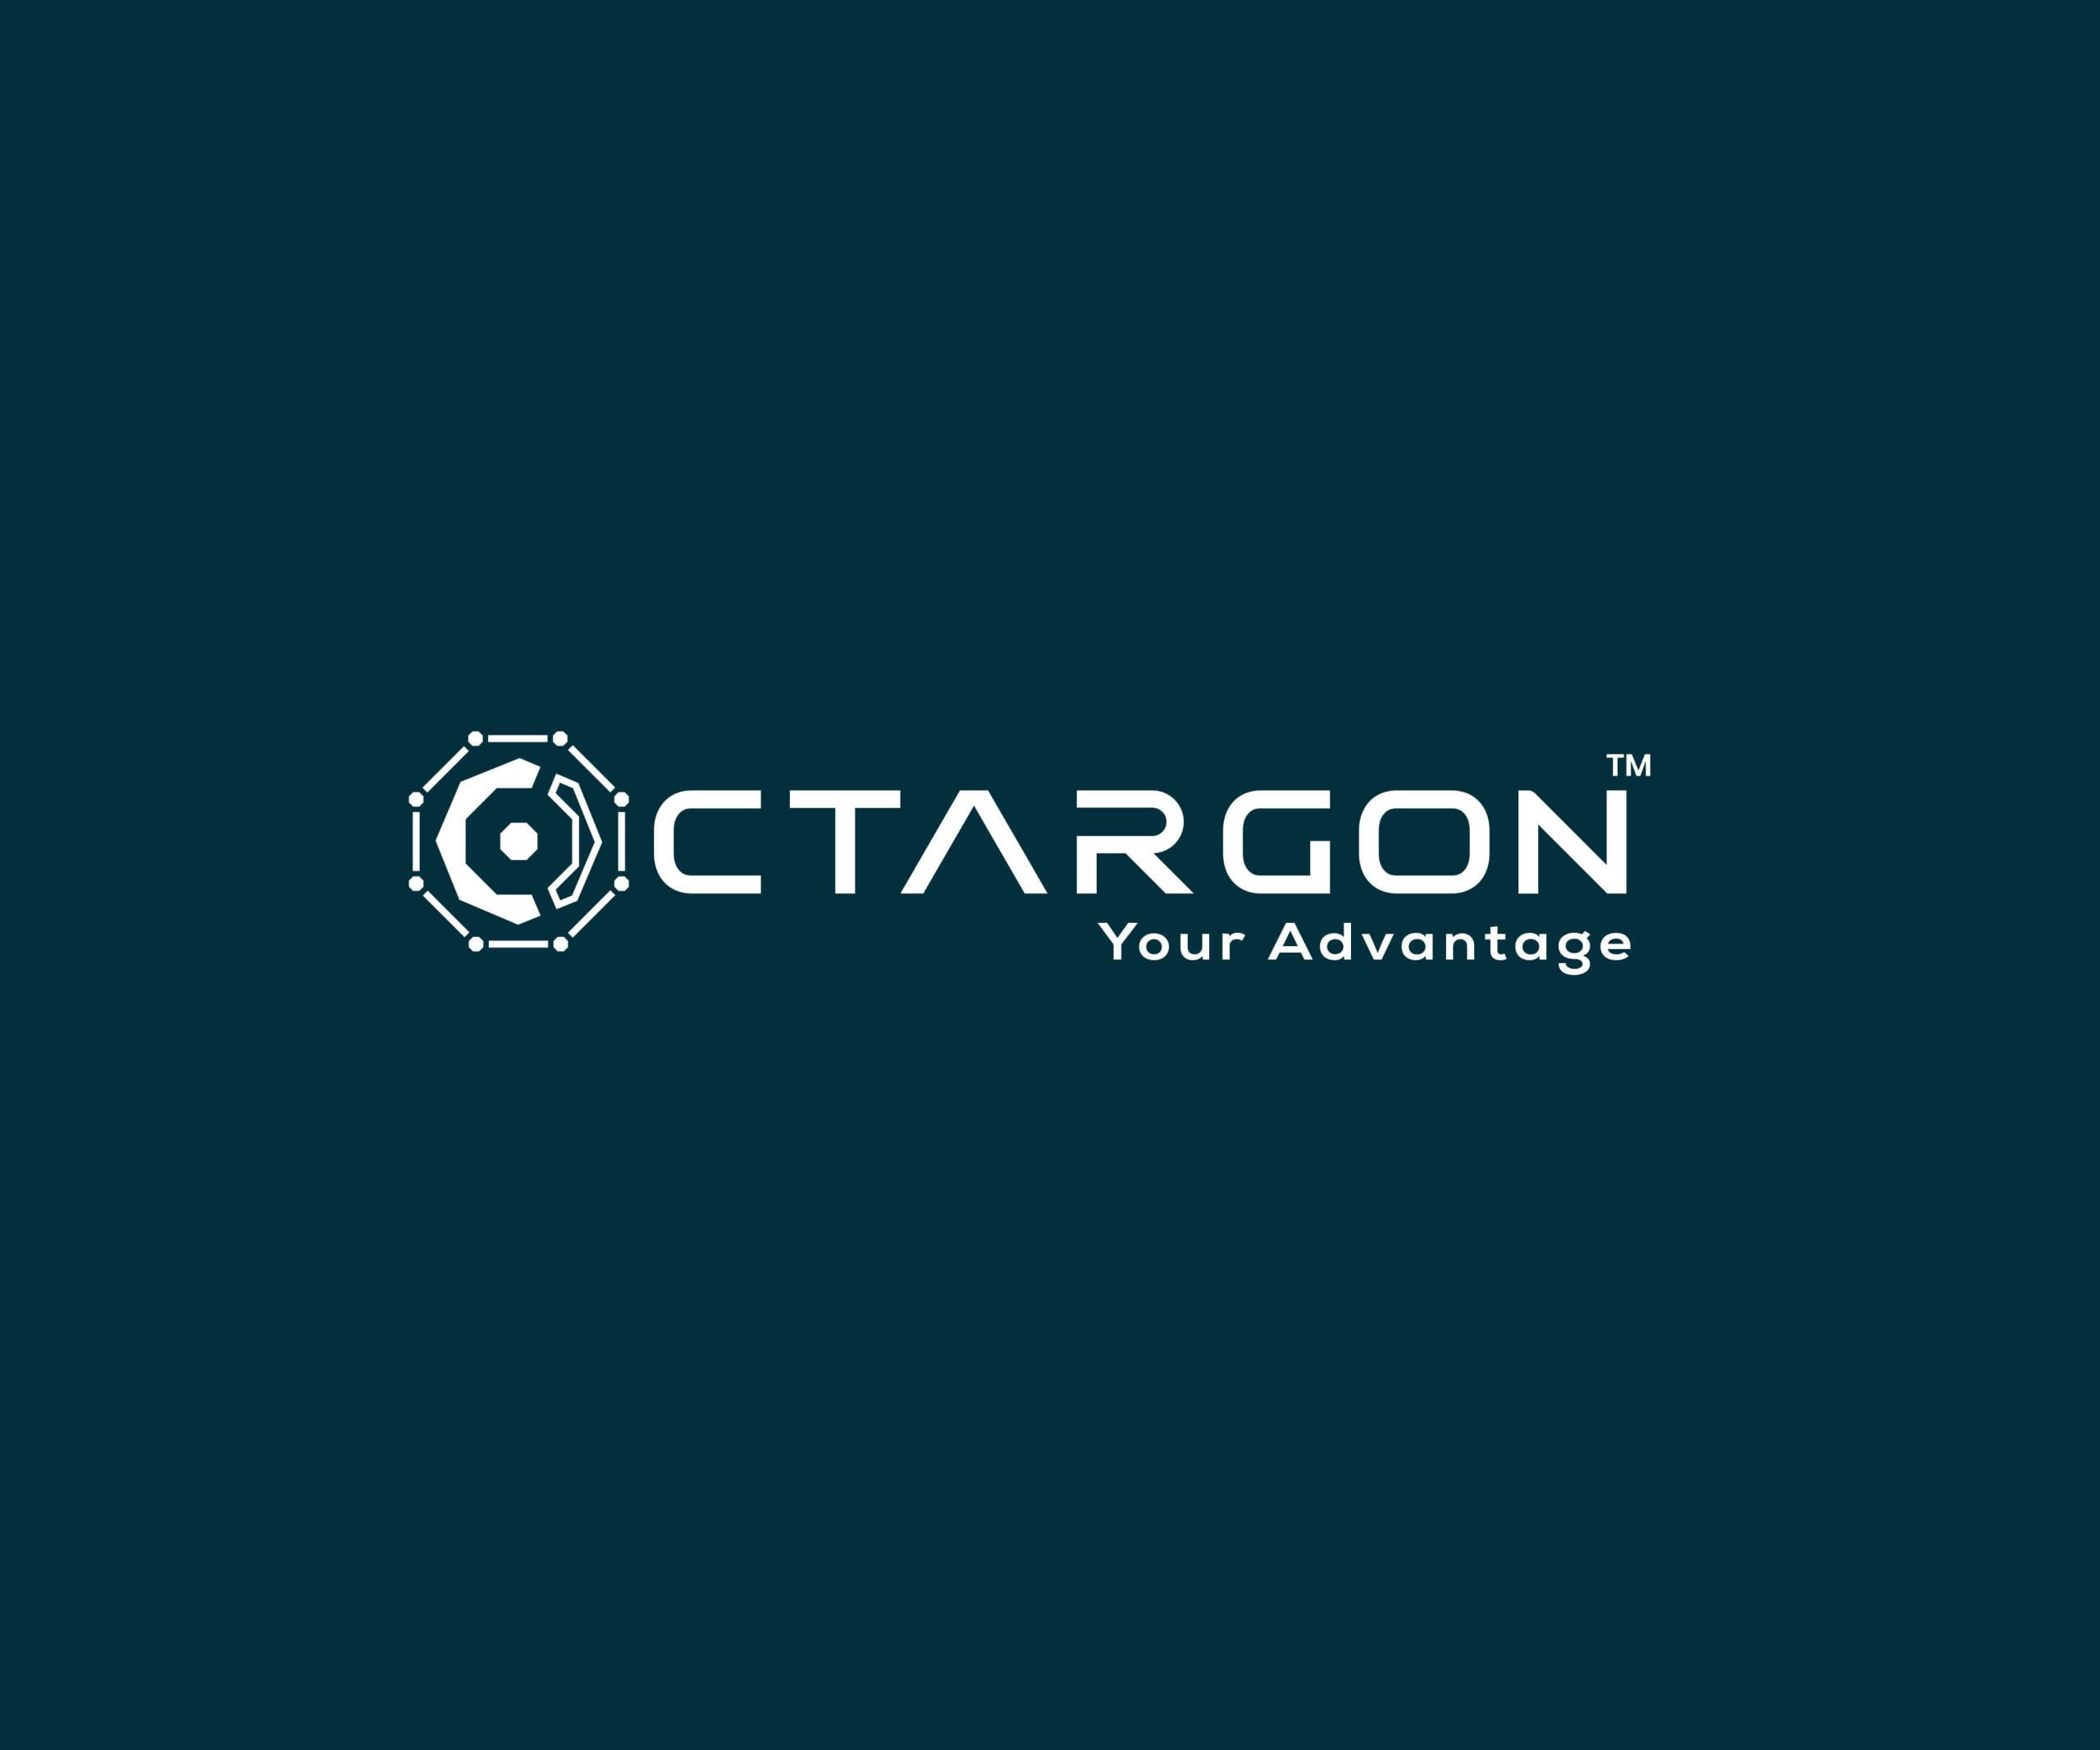 Octargon Logo Designer